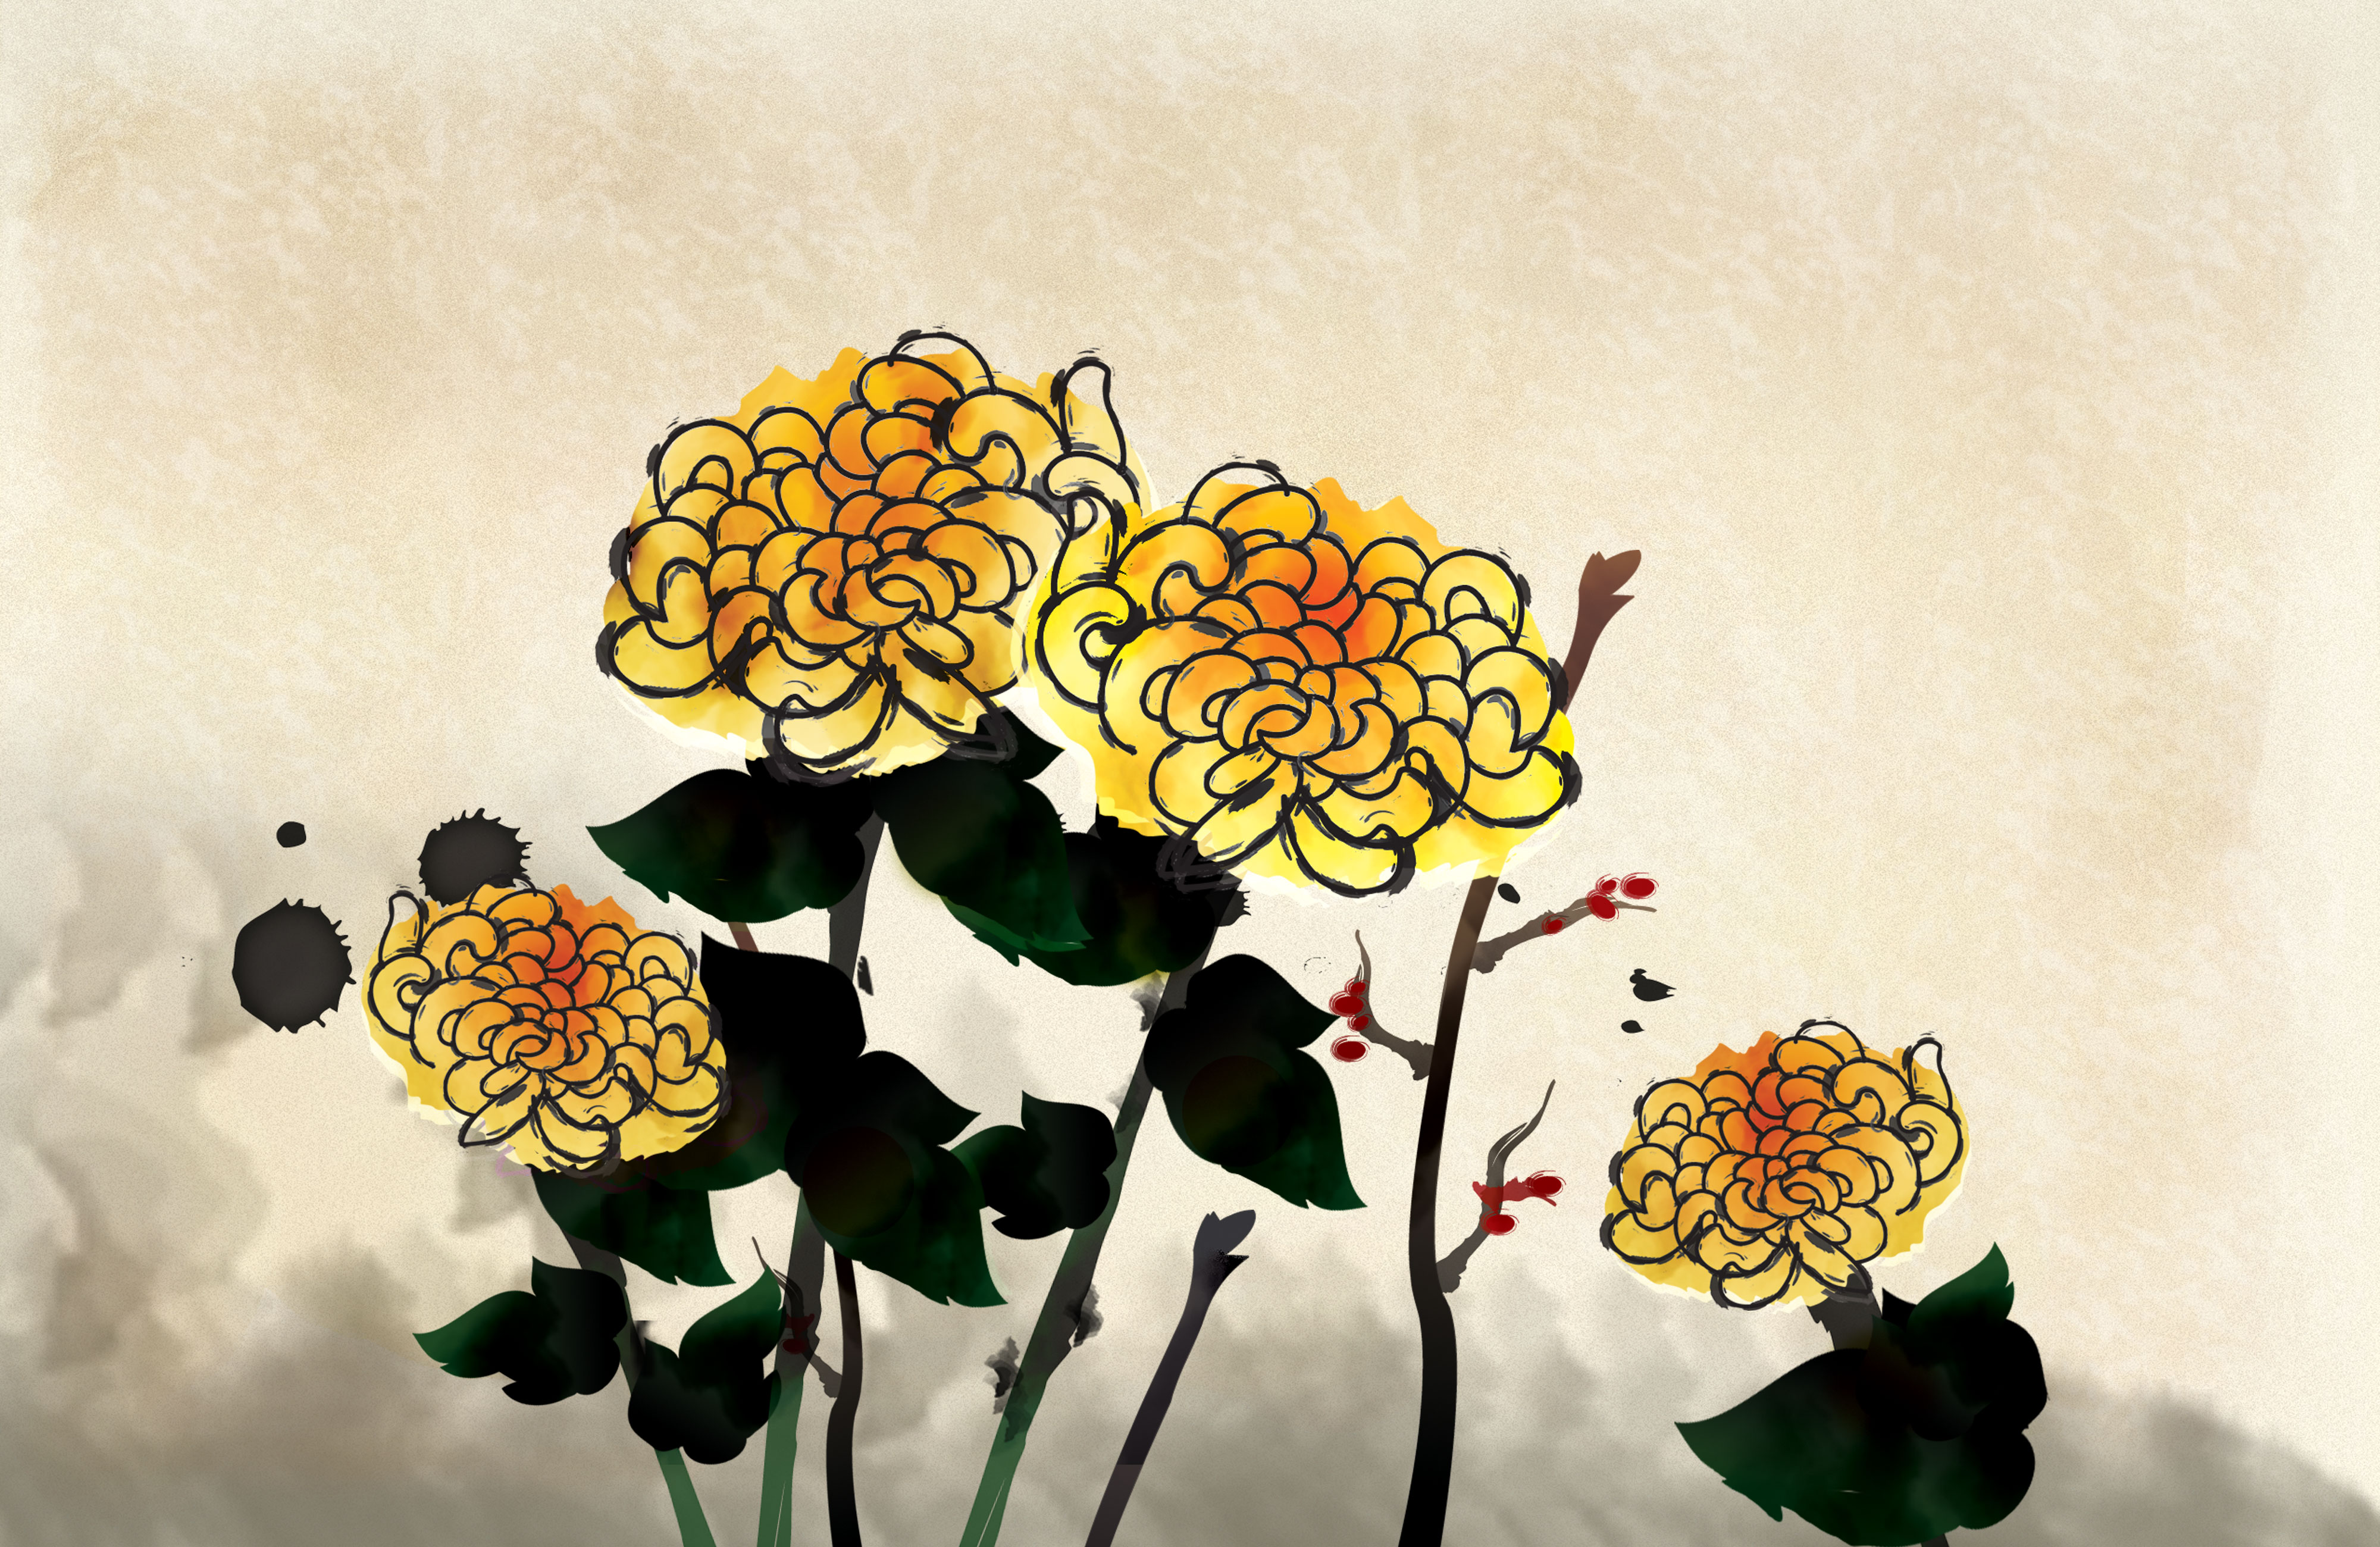 きく 菊 のイラスト 画像no 24 壁紙 手書き風の菊 無料のフリー素材集 百花繚乱